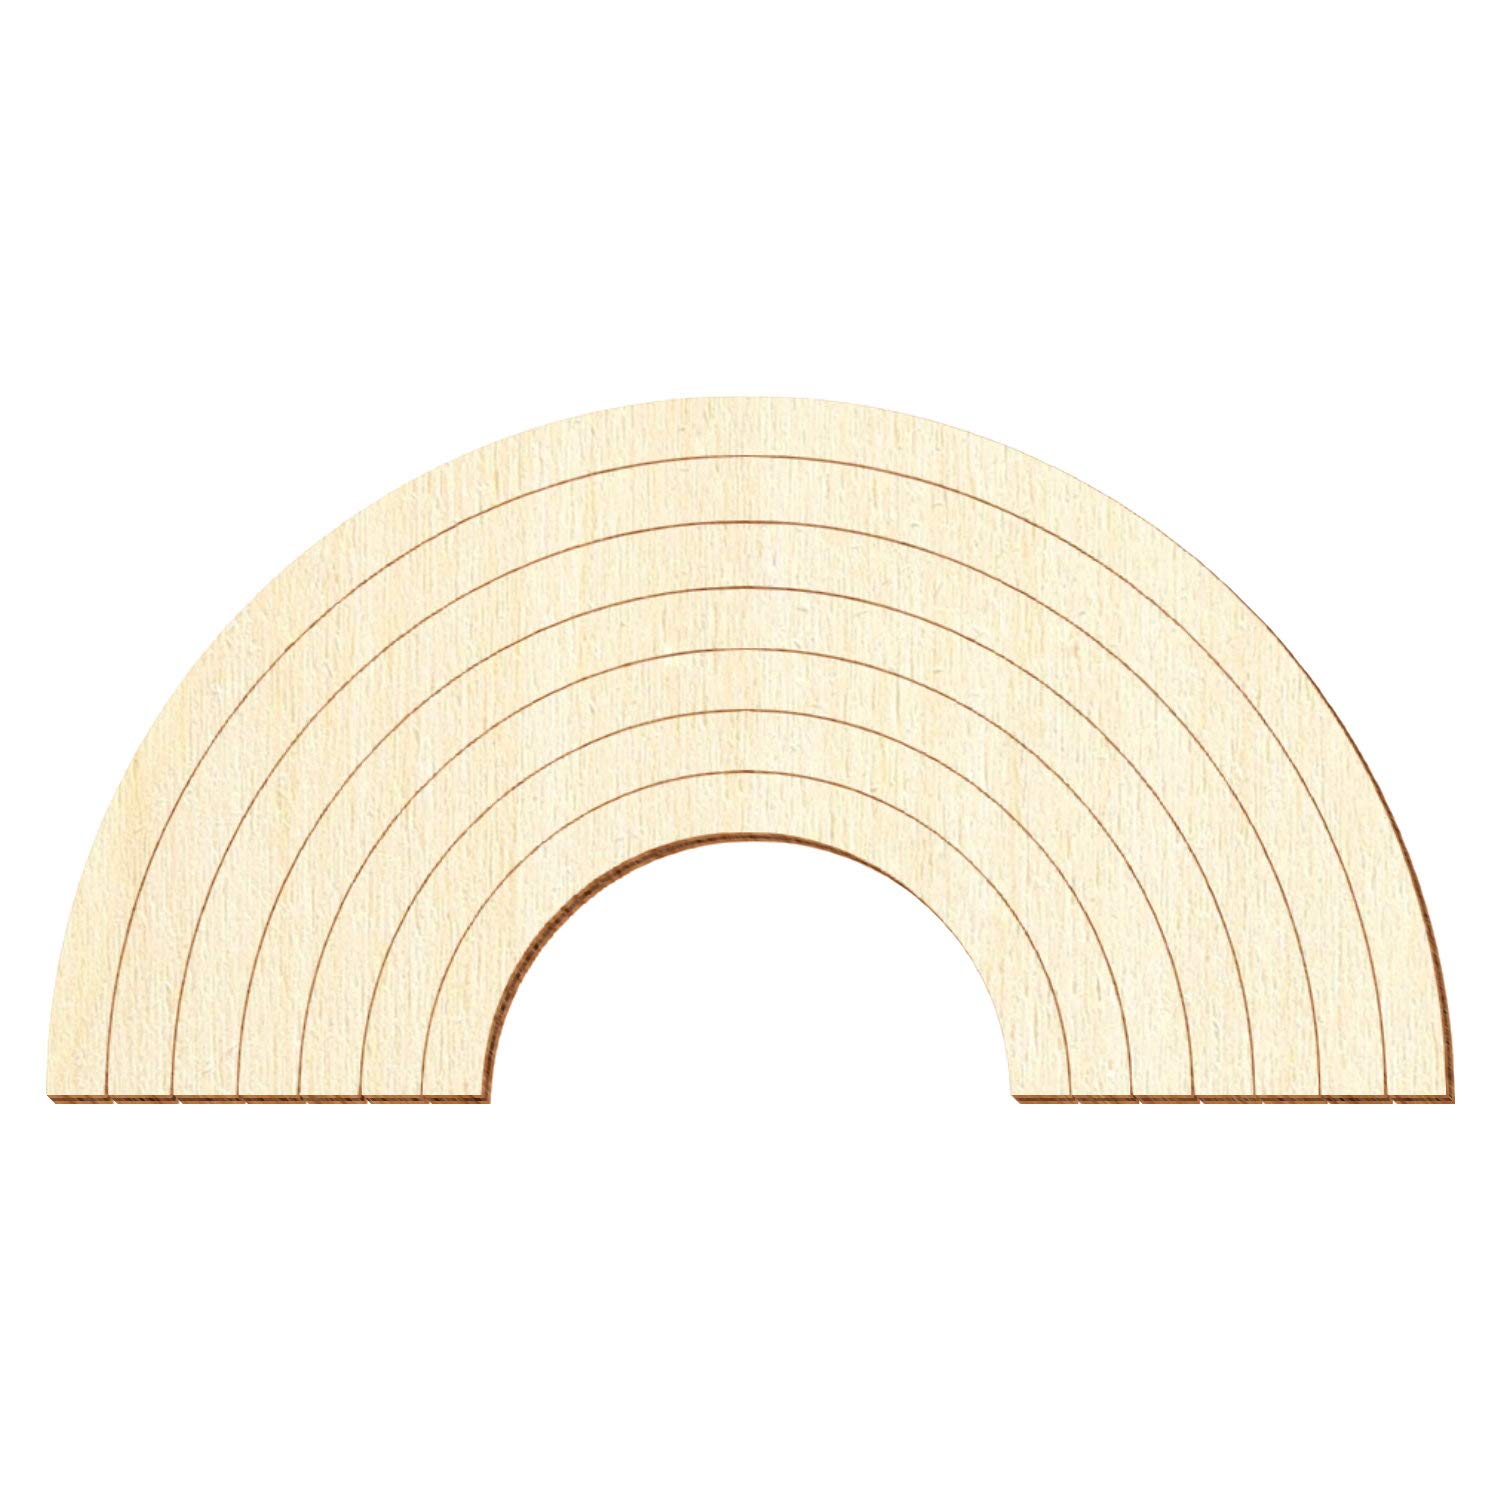 Holz Regenbogen V1 - Deko Basteln 8-50cm, Pack mit:1 Stück, Breite:41cm breit